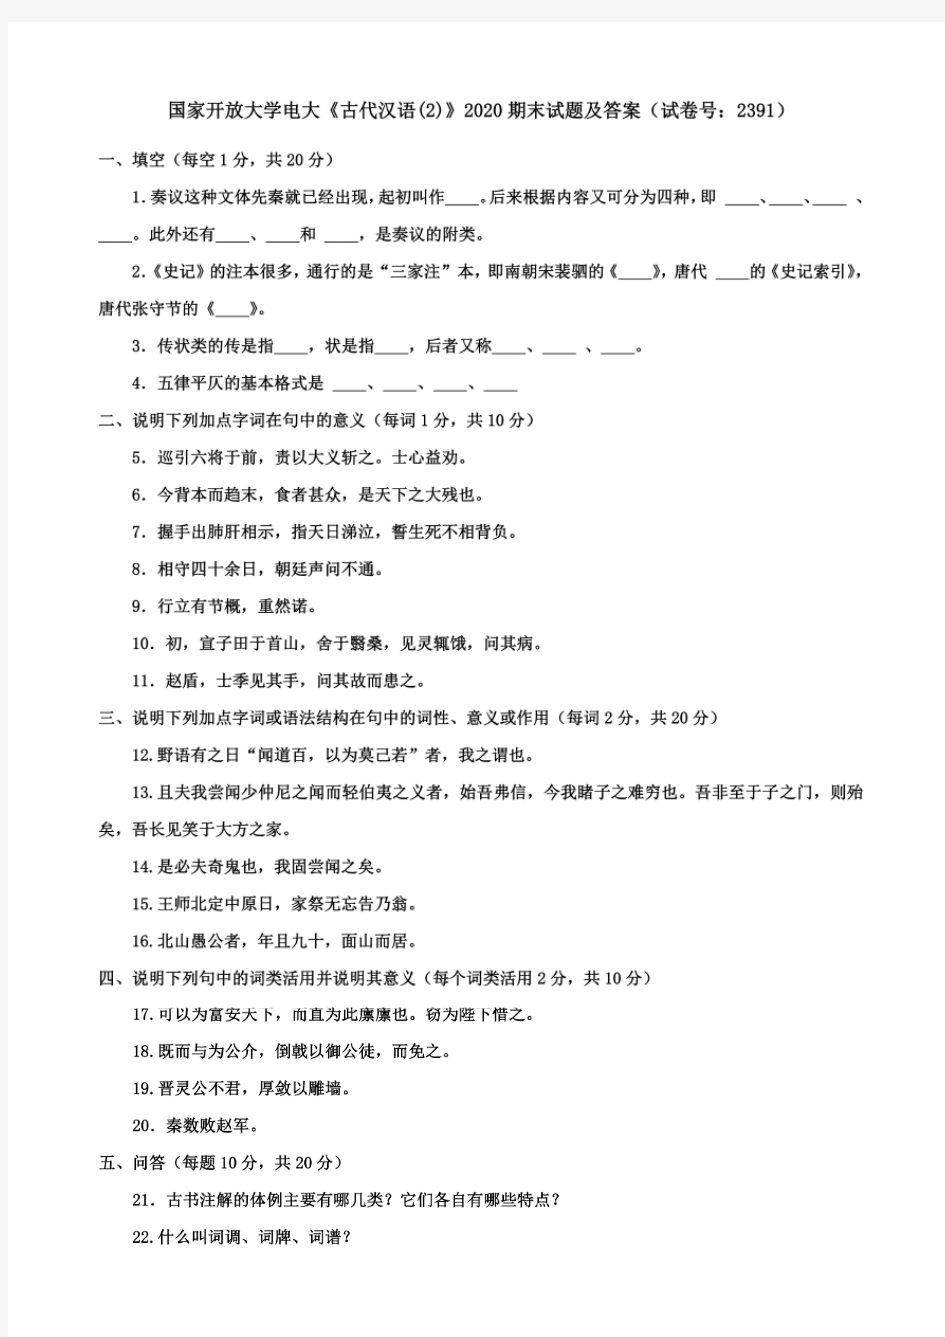 国家开放大学电大《古代汉语(2) 》 2020 期末试题及答案(试卷号： 2391)